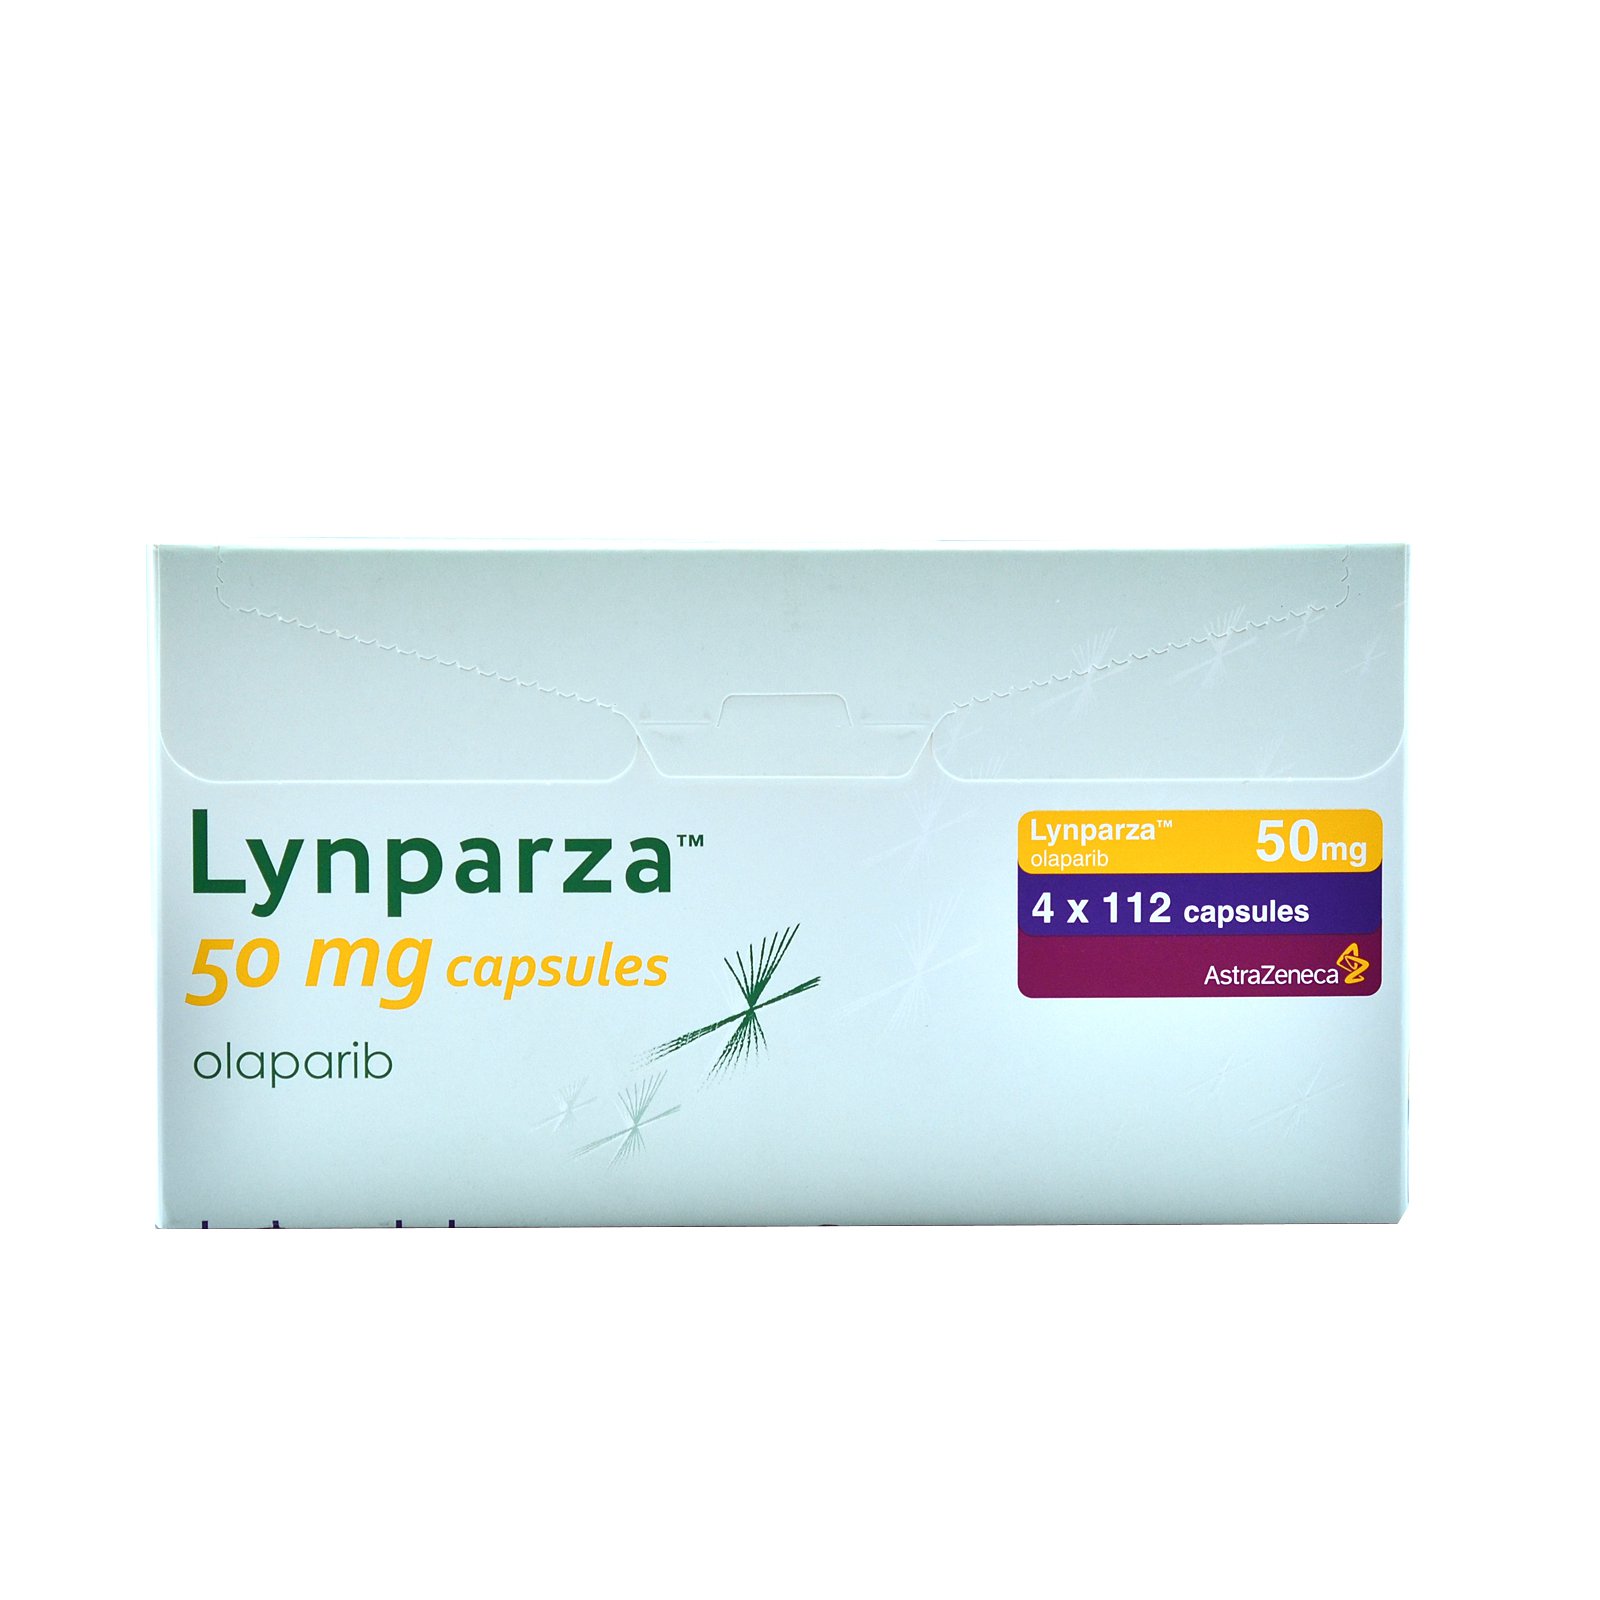 奥拉帕尼胶囊(Lynparza olaparib